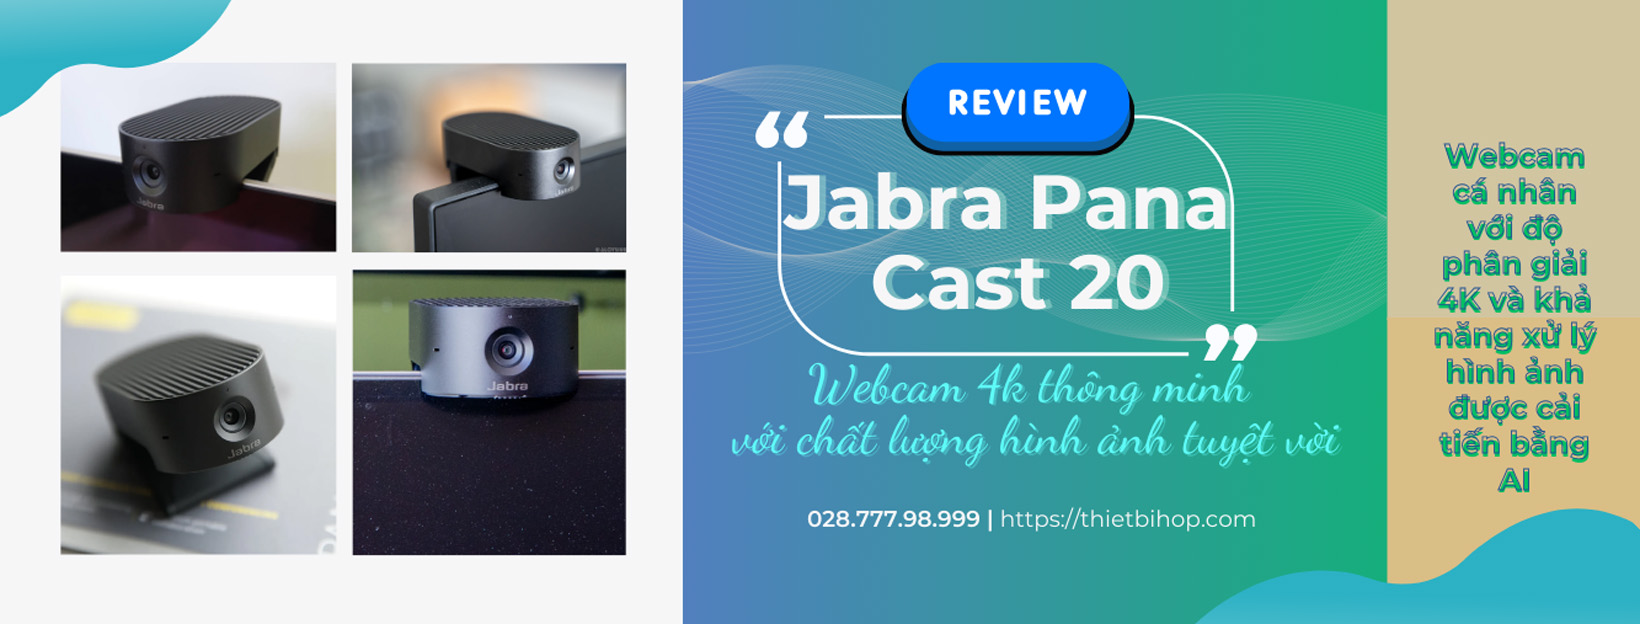 jabra pana cast 20 webcam 4k thông minh